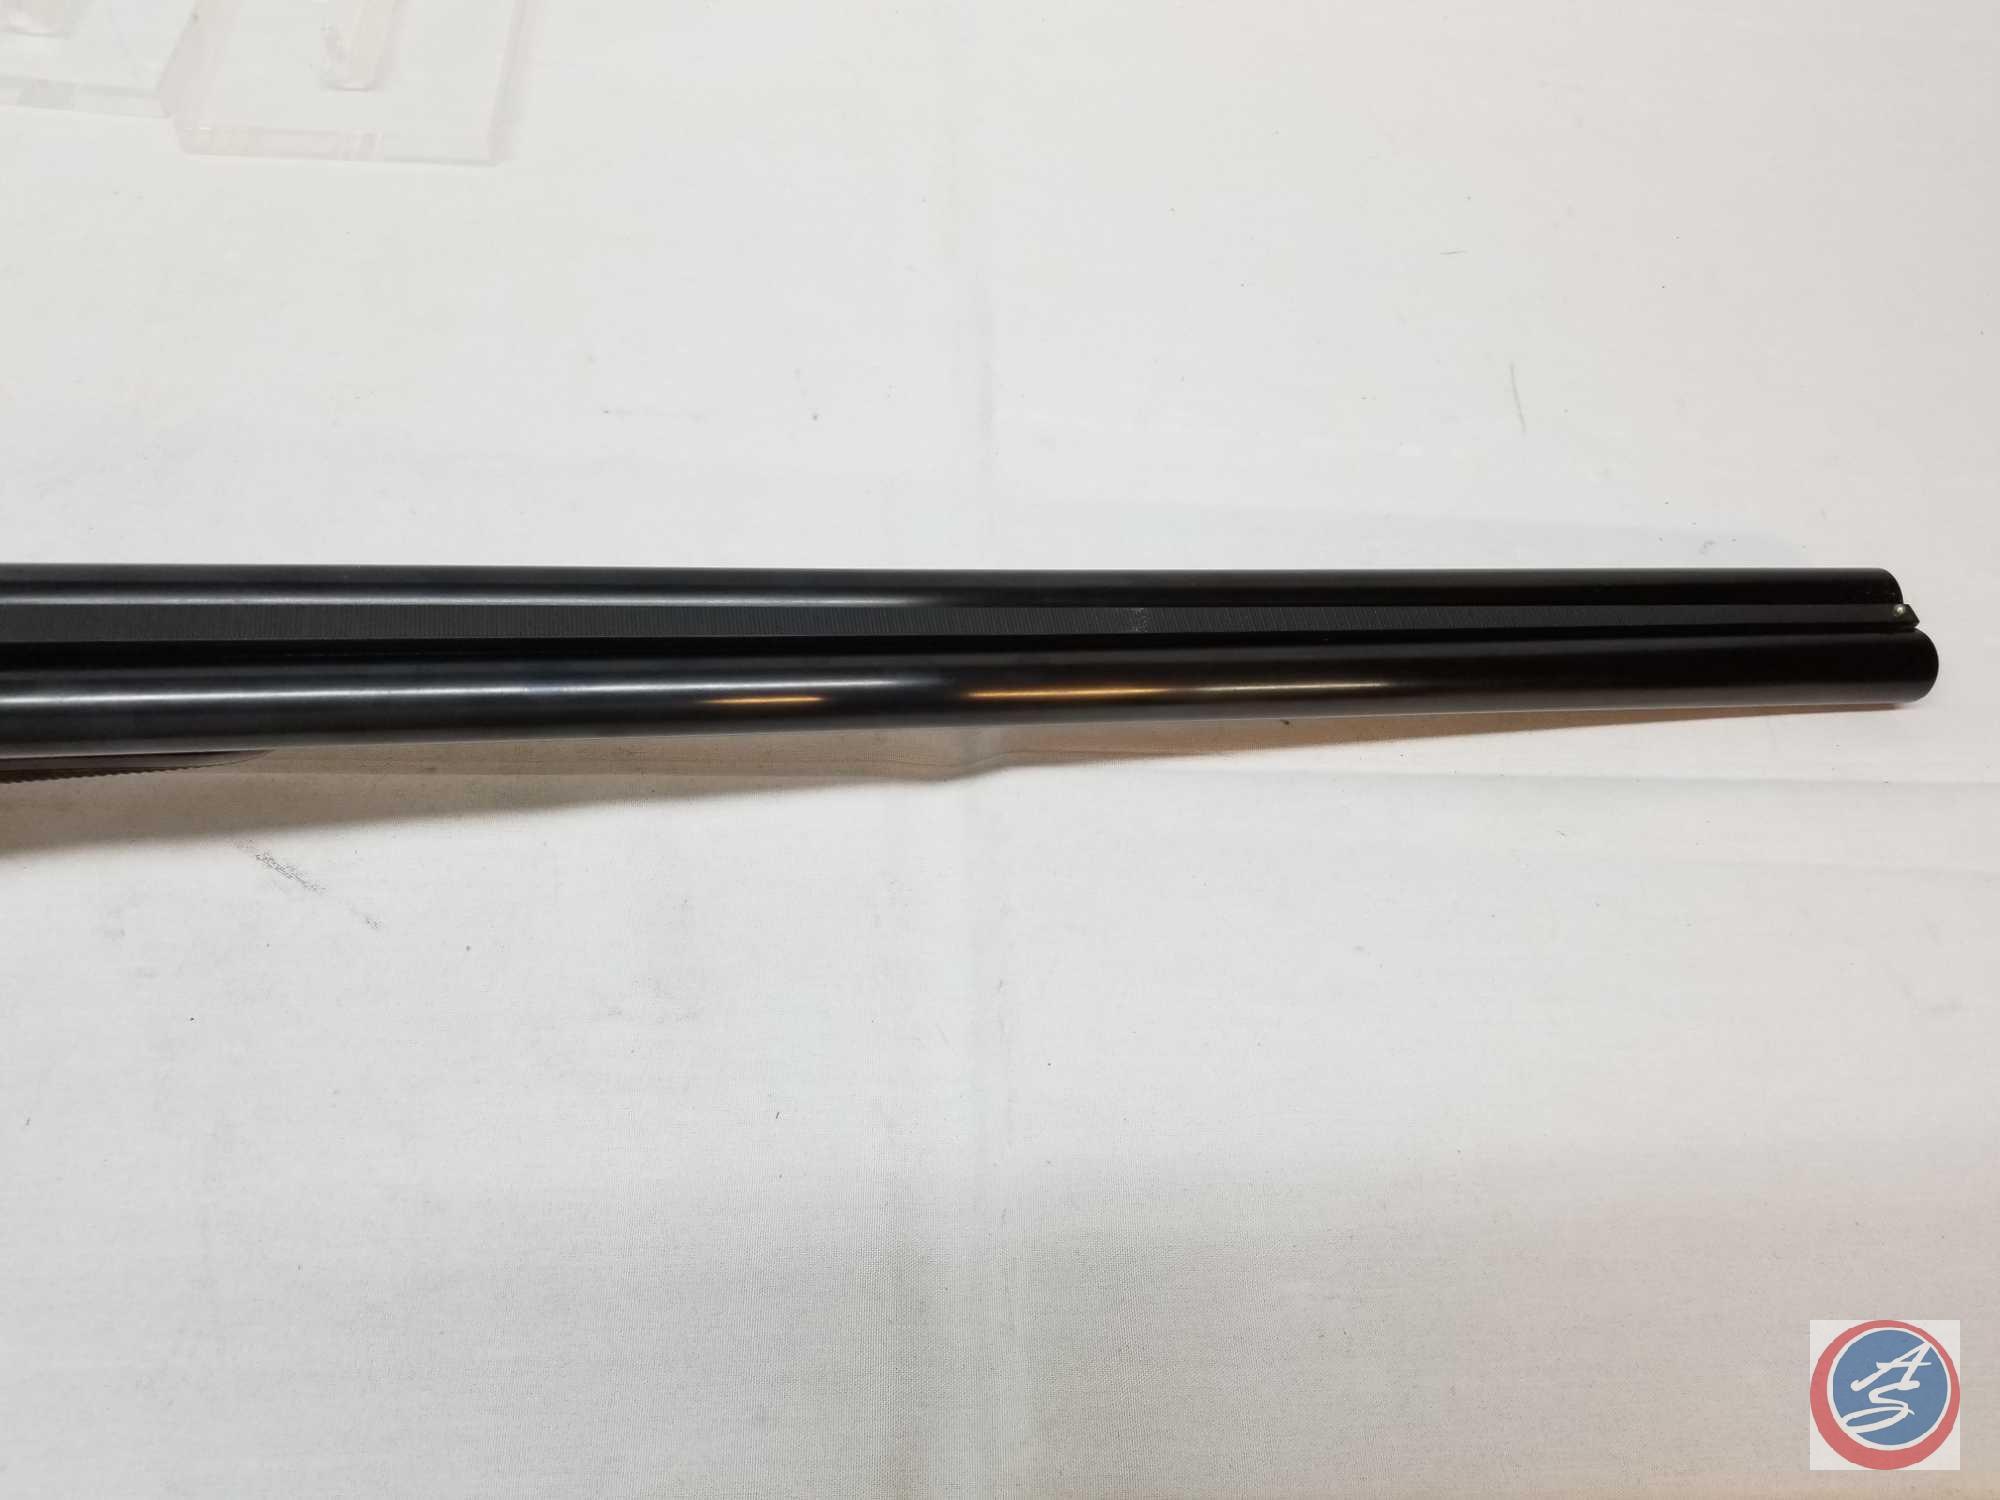 Franchi Model Highlander 12 GA 3" Shotgun Side by Side Break Action Shotgun new in box. Imported By